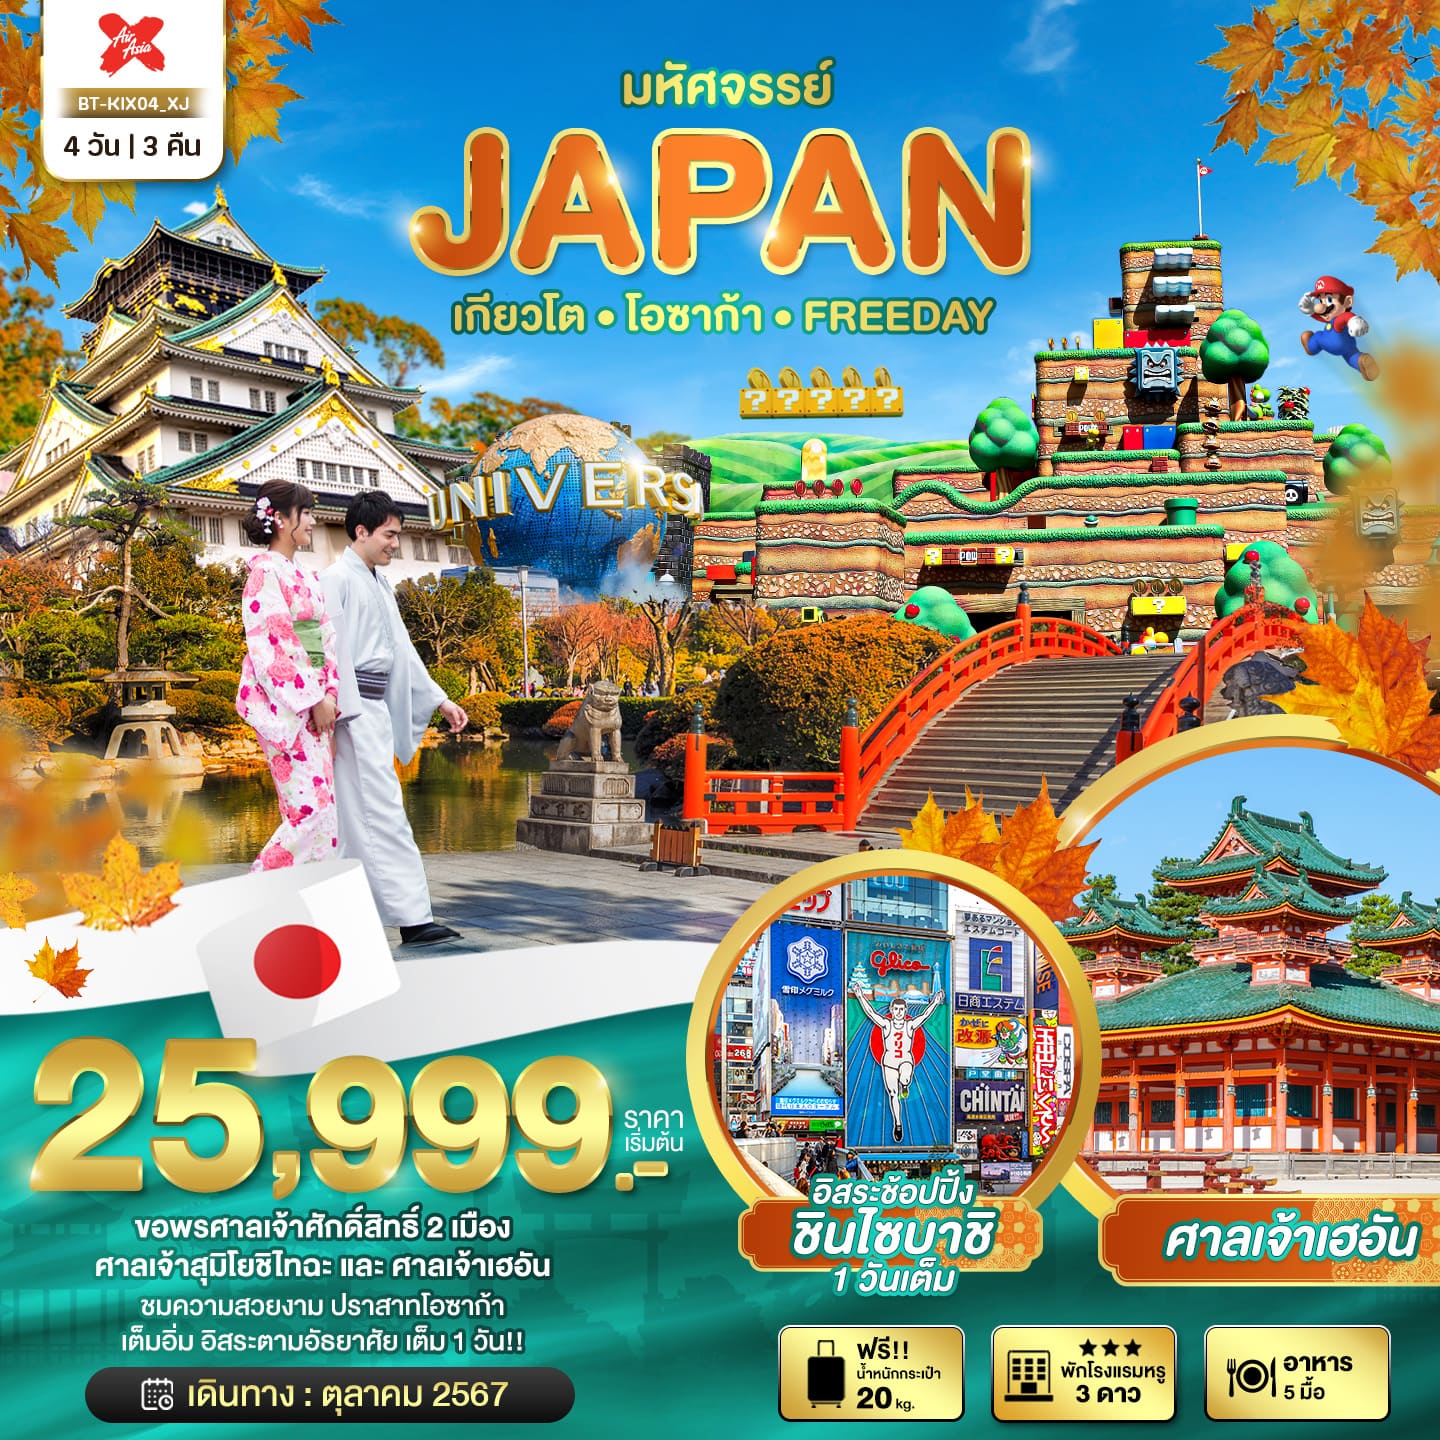 ทัวร์ญี่ปุ่น มหัศจรรย์ JAPAN เกียวโต โอซาก้า ฟรีเดย์ 4วัน 3คืน (XJ)